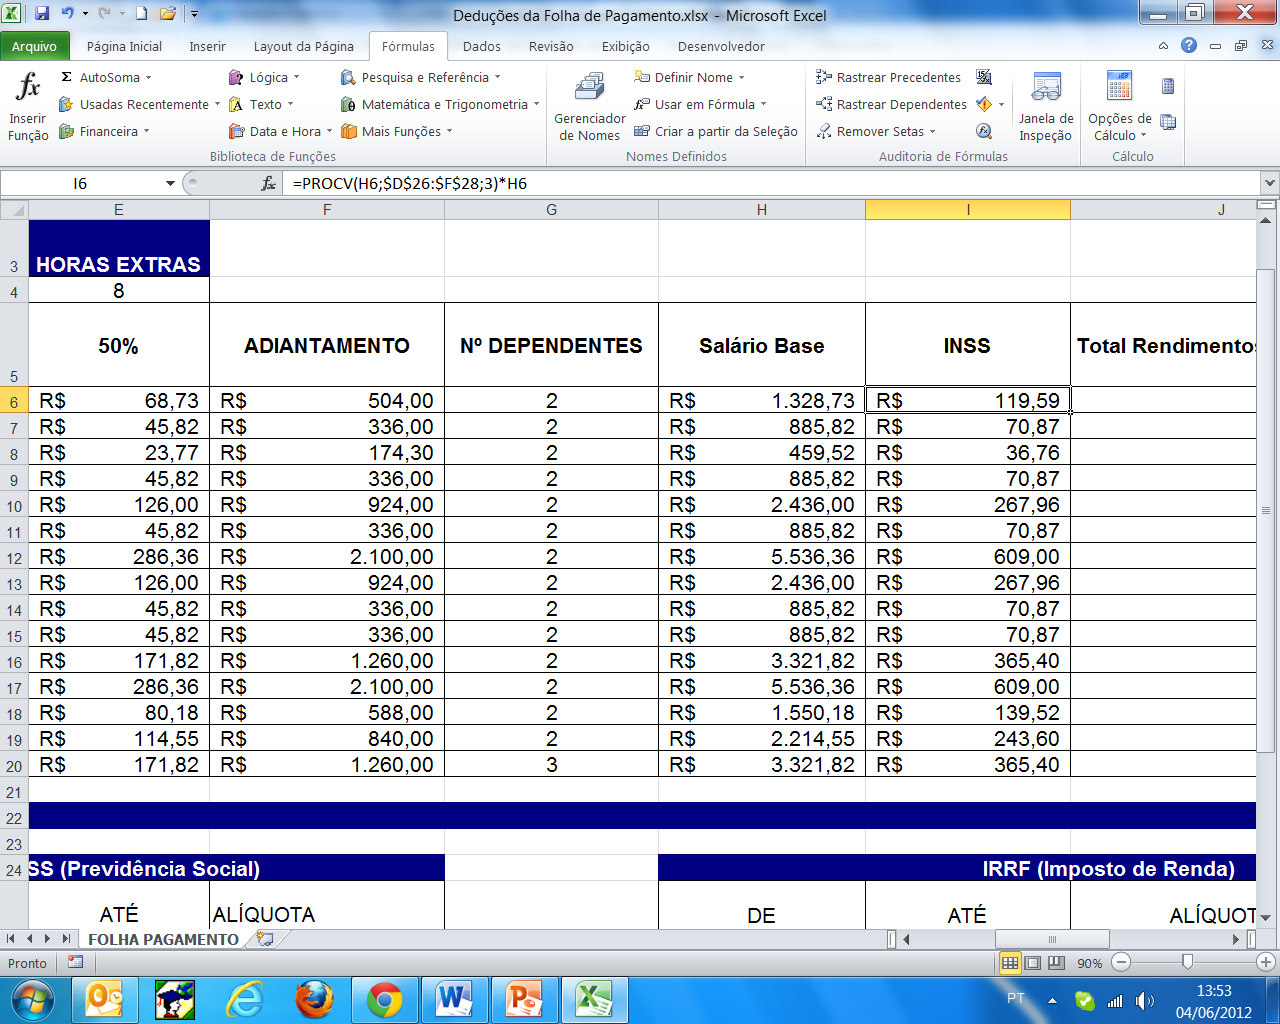 Porém, veja na planilha que funcionários que ganham mais que o teto de R$ 3.916,20 tiveram um desconto maior.